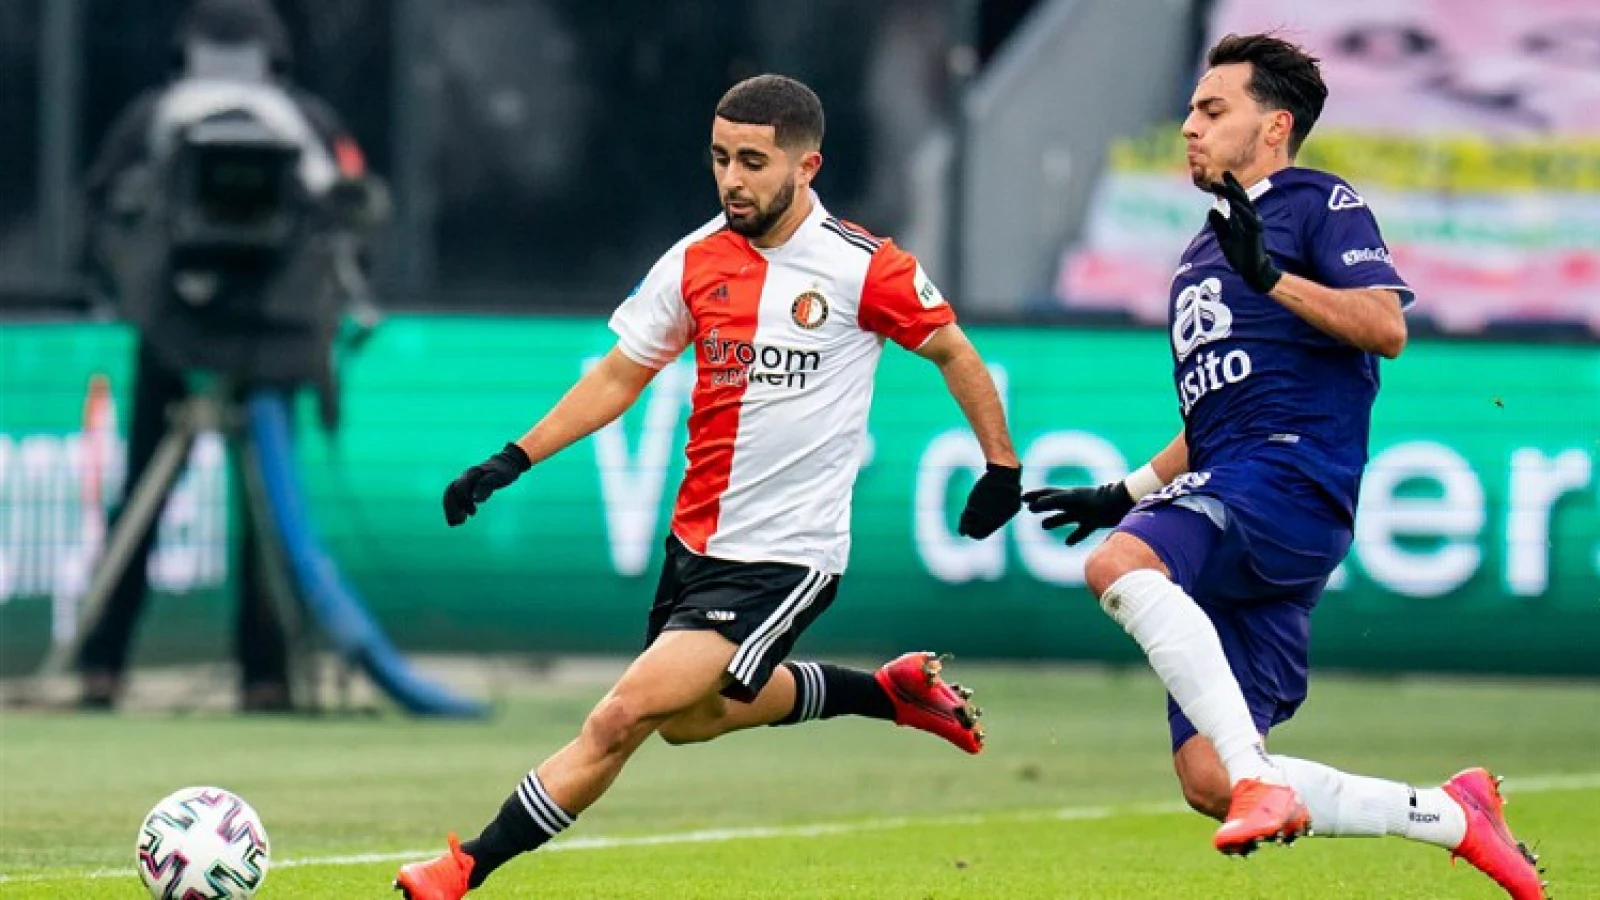 'Azarkan hoorde nog niets over plannen van Feyenoord voor nieuwe seizoen'